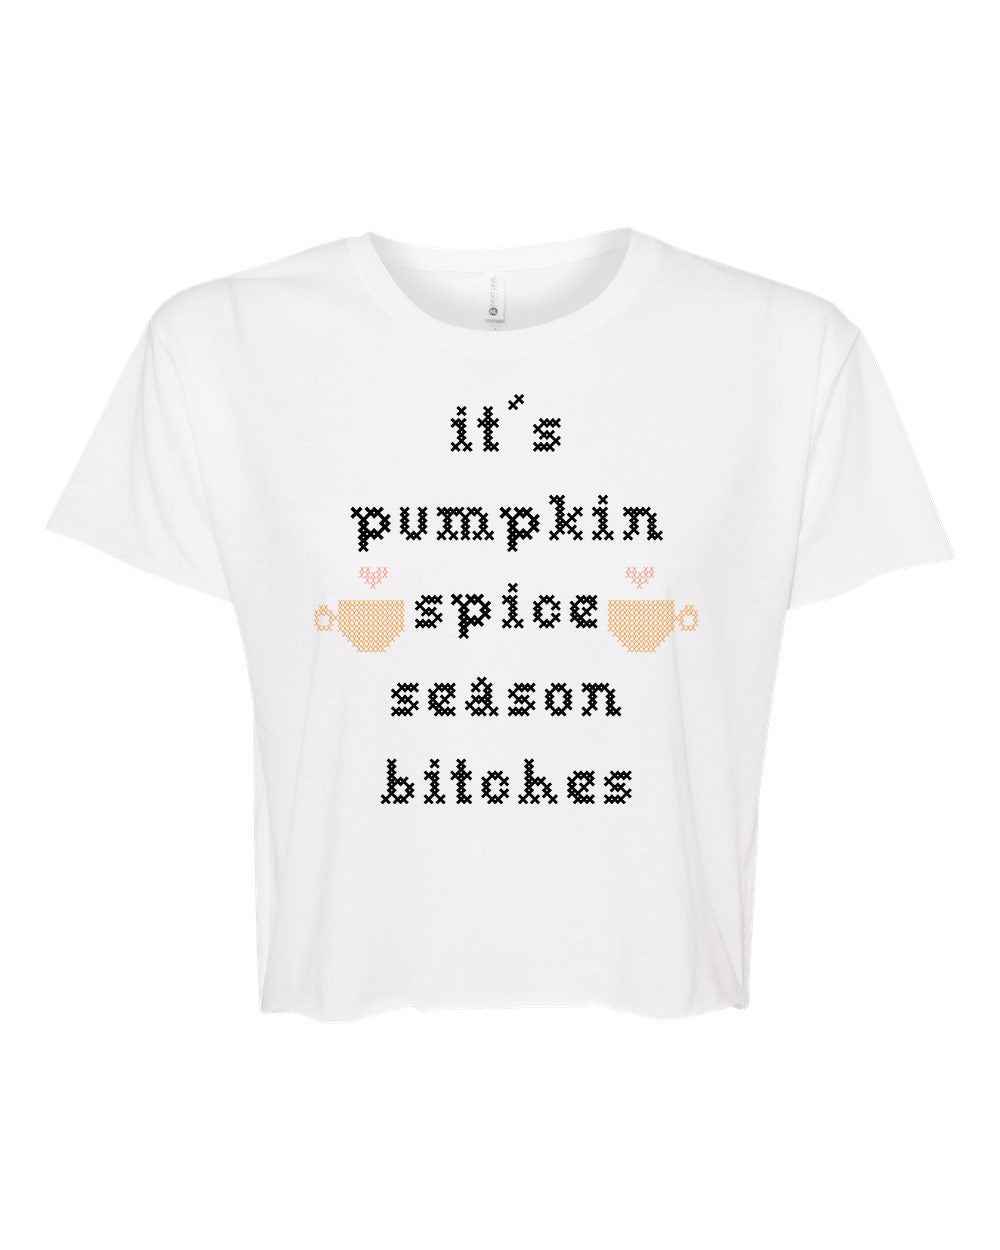 It's Pumpkin Spice Season Bitches - Cross Stitch Design - Women's Crop Tee - White